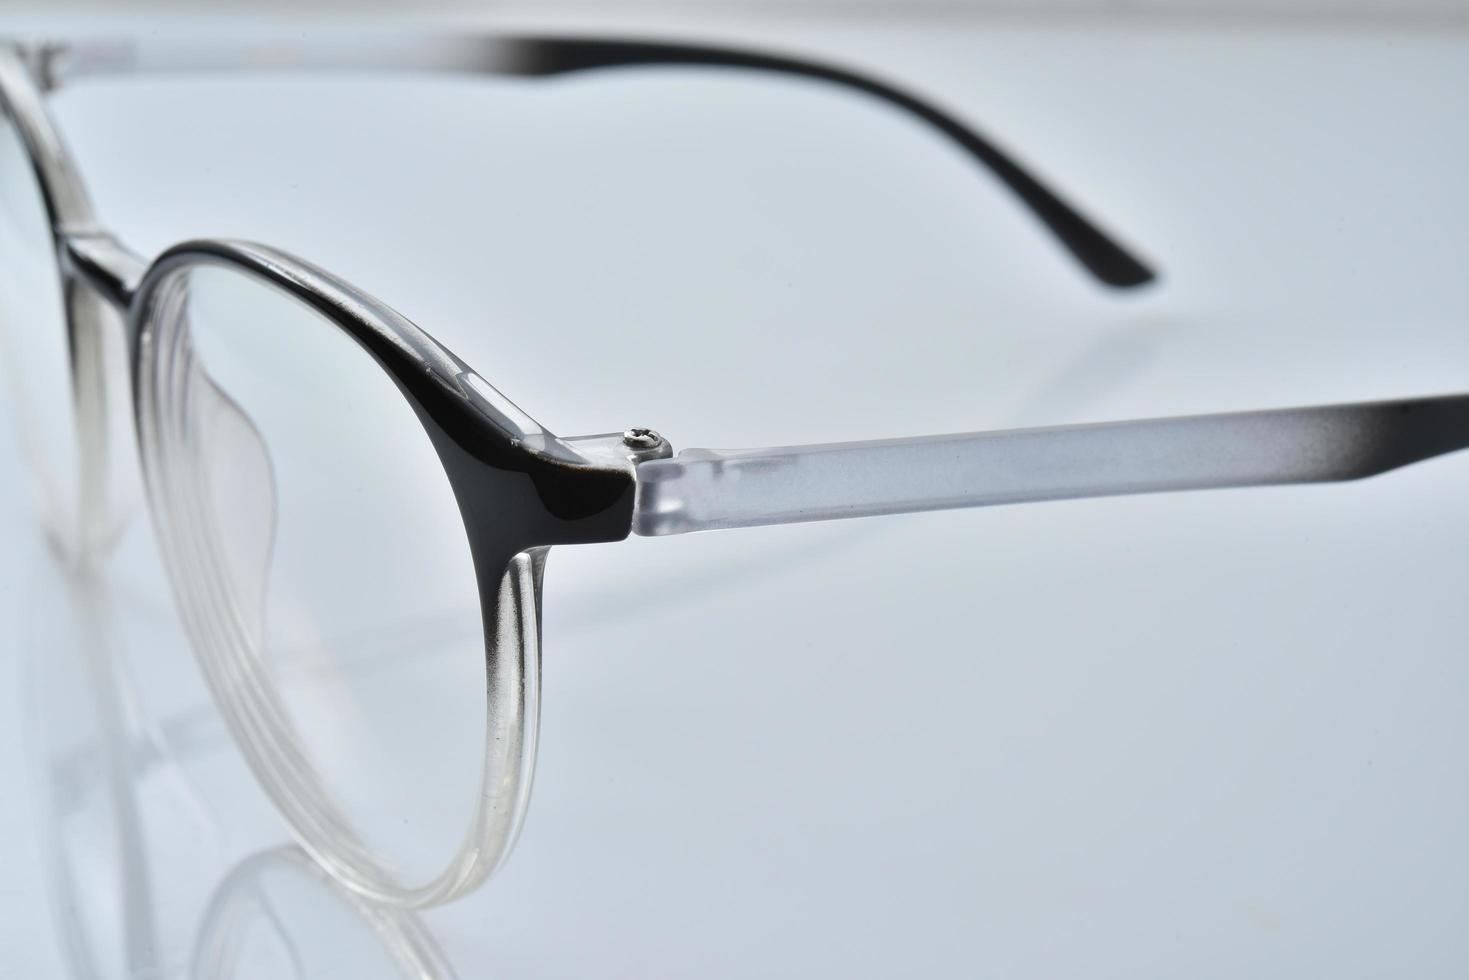 lunettes sur fond blanc photo